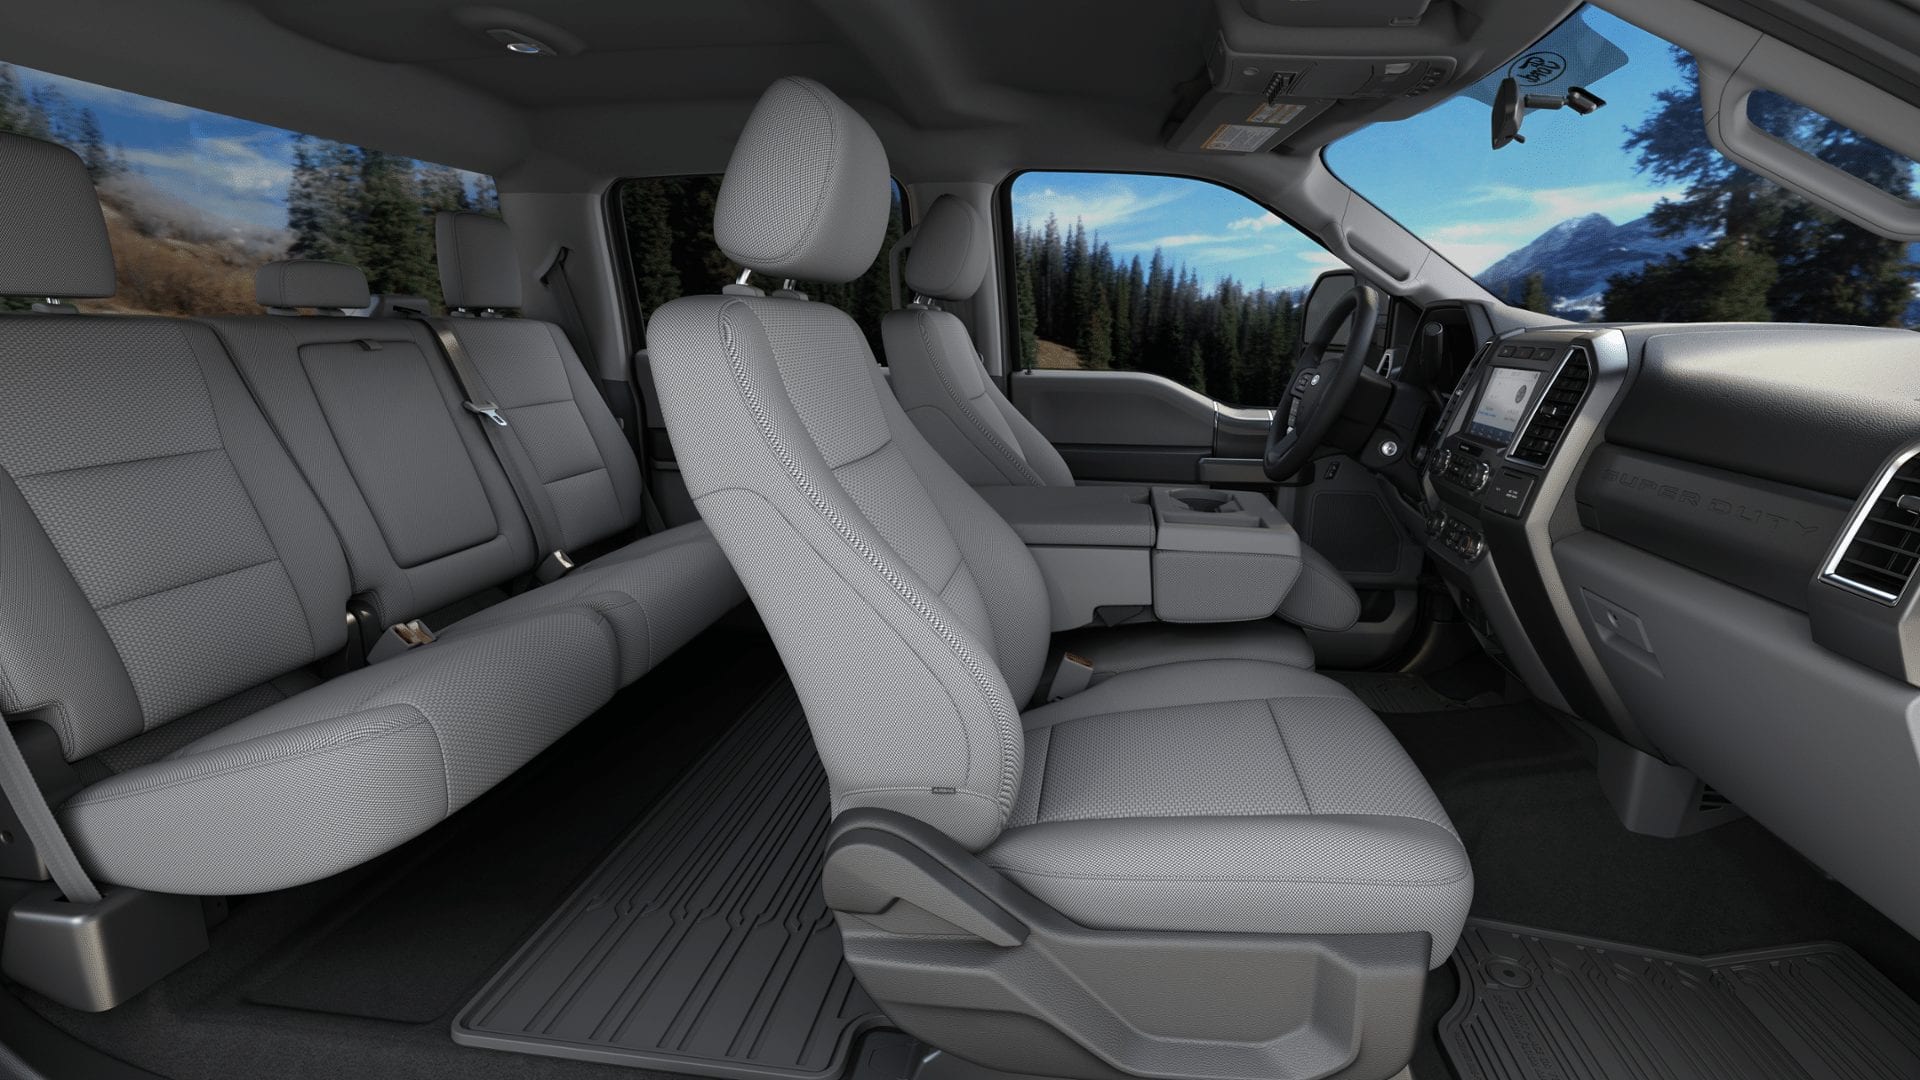 2021 Ford F250 Crew Cab LWB XLT Interior Lockhart Automotive